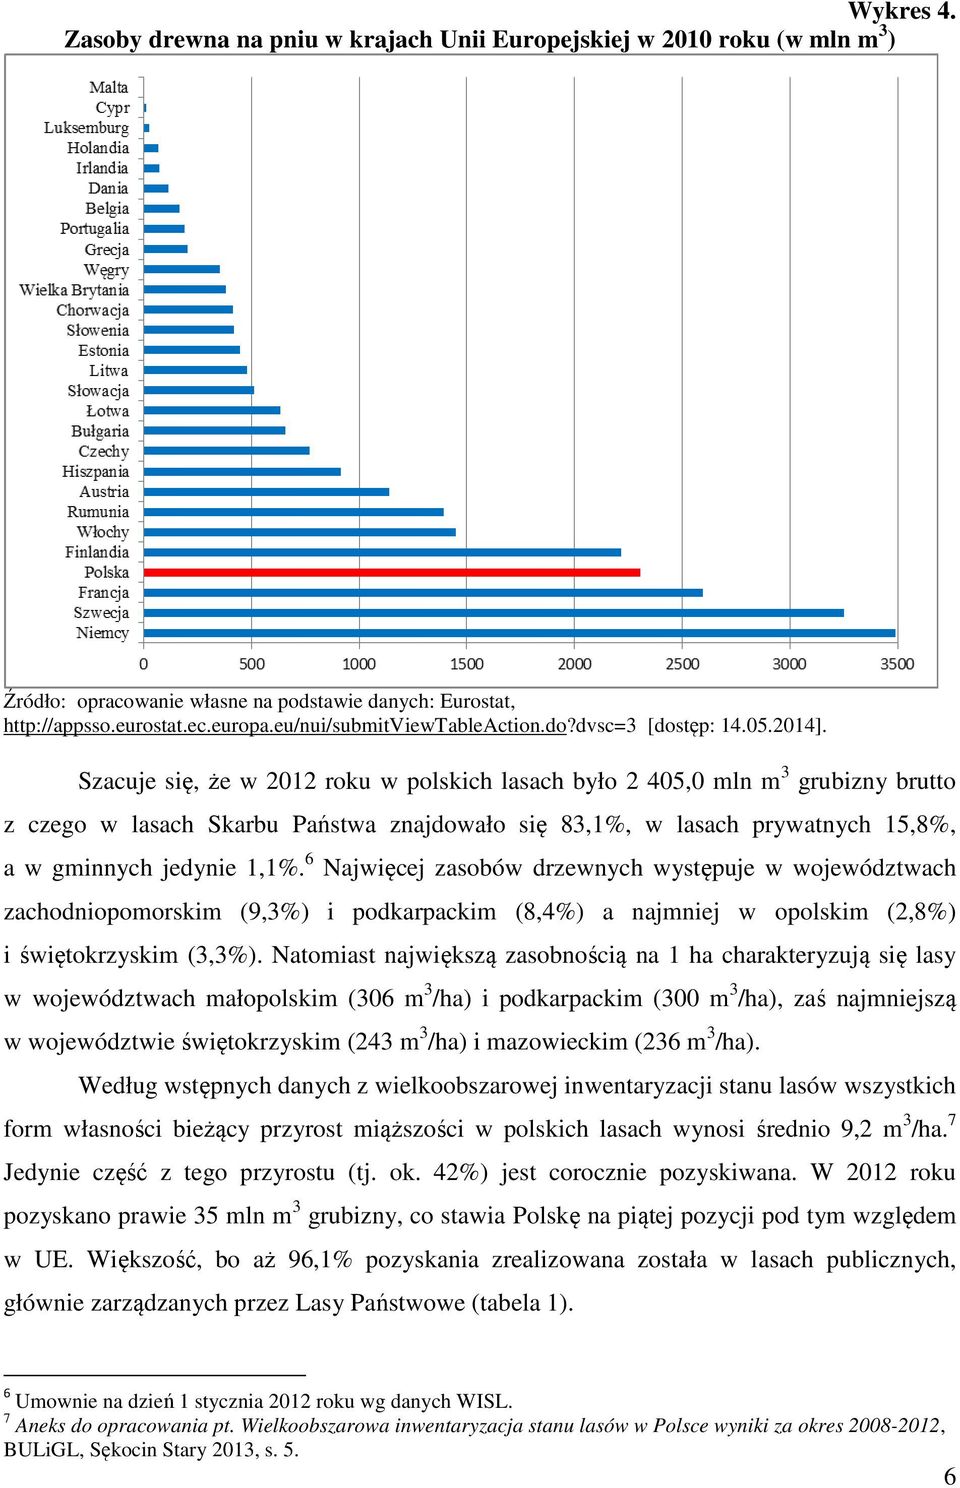 Szacuje się, że w 2012 roku w polskich lasach było 2 405,0 mln m 3 grubizny brutto z czego w lasach Skarbu Państwa znajdowało się 83,1%, w lasach prywatnych 15,8%, a w gminnych jedynie 1,1%.